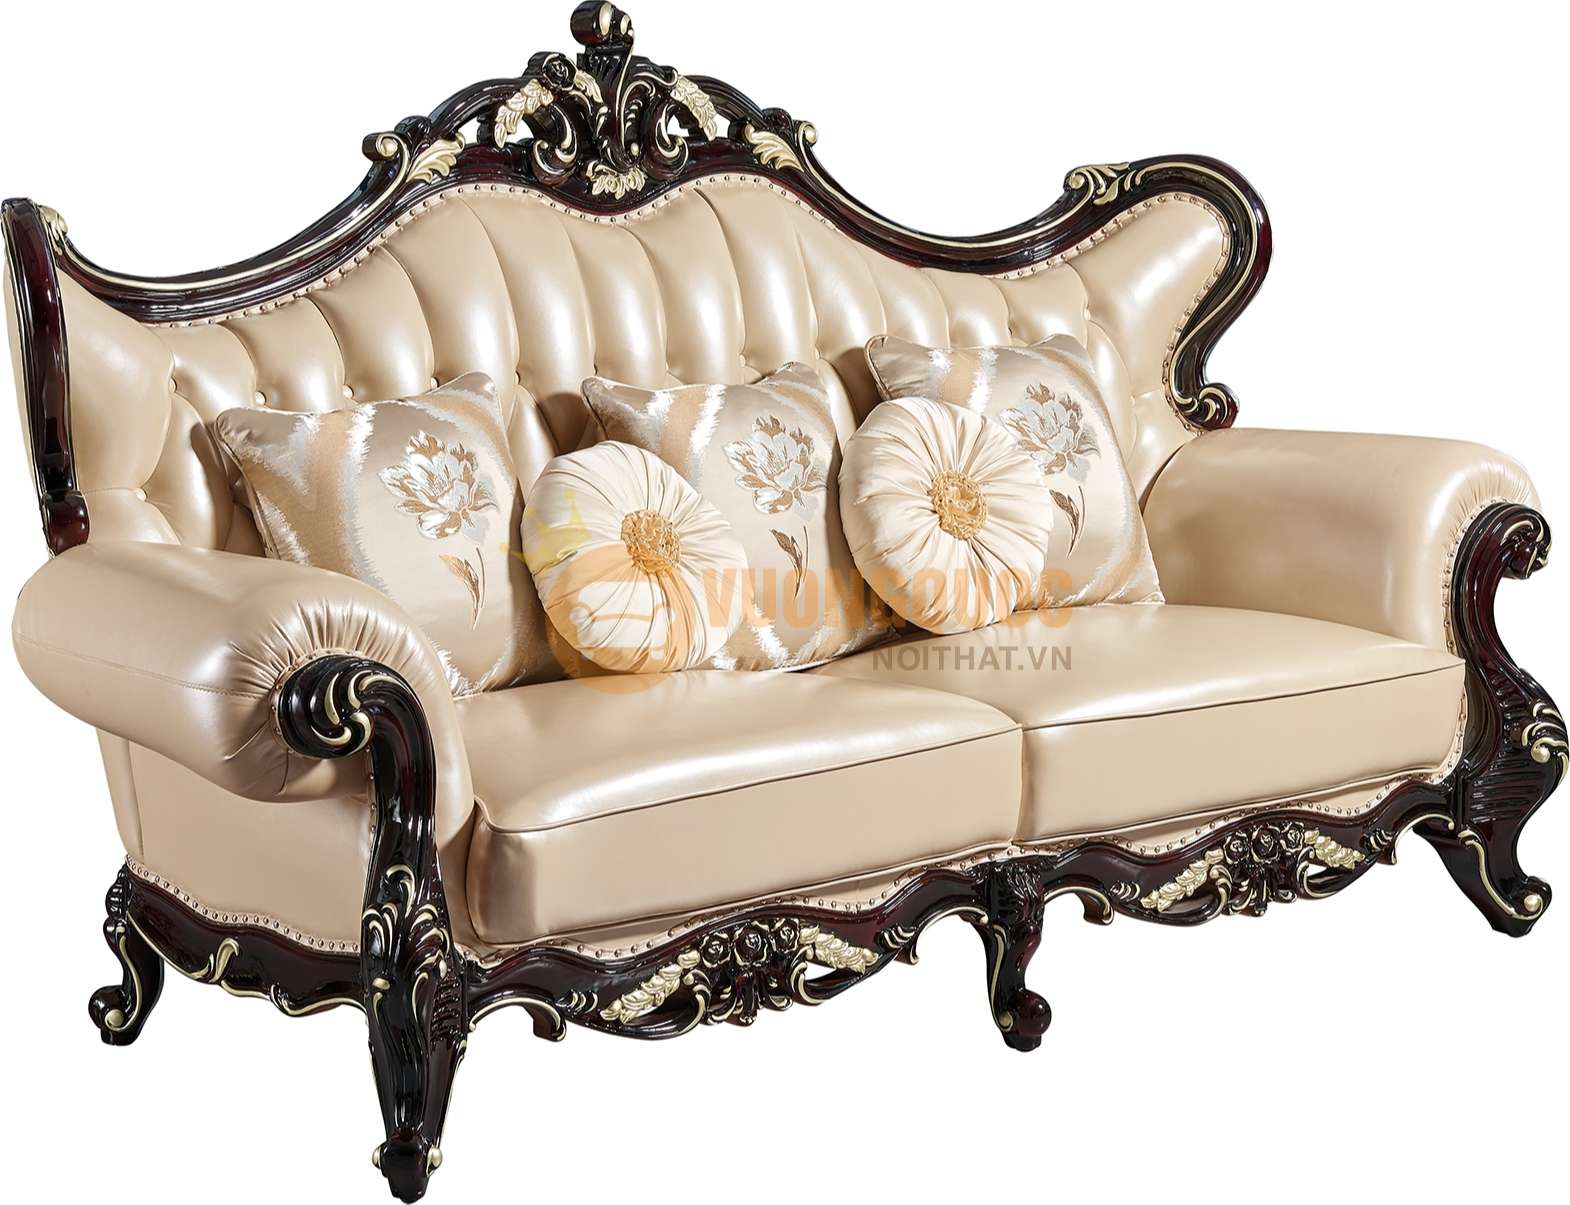 Bộ sofa phòng khách tân cổ điển nhập khẩu JVN6902AS